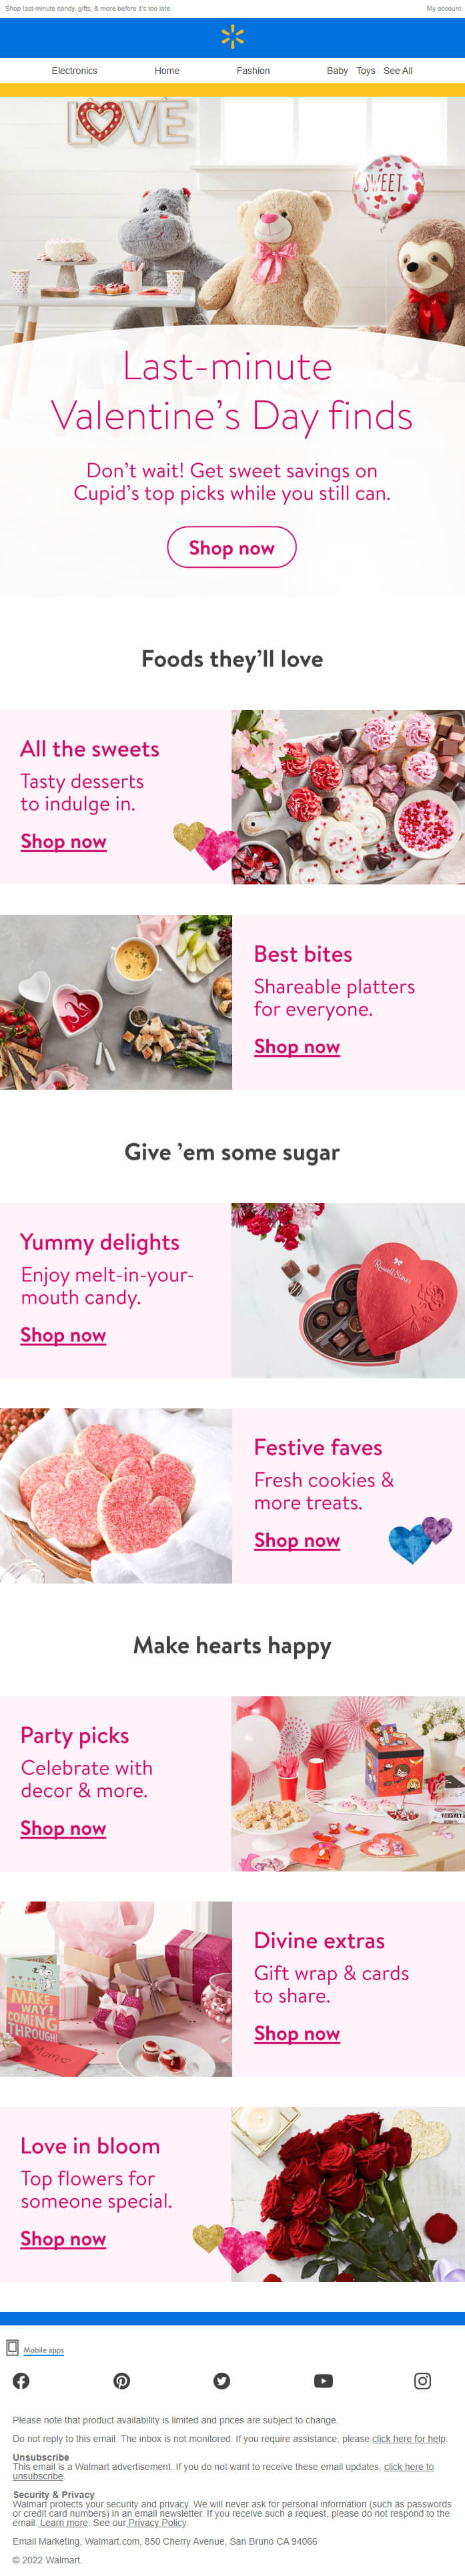 Walmart- Valentine's day Email